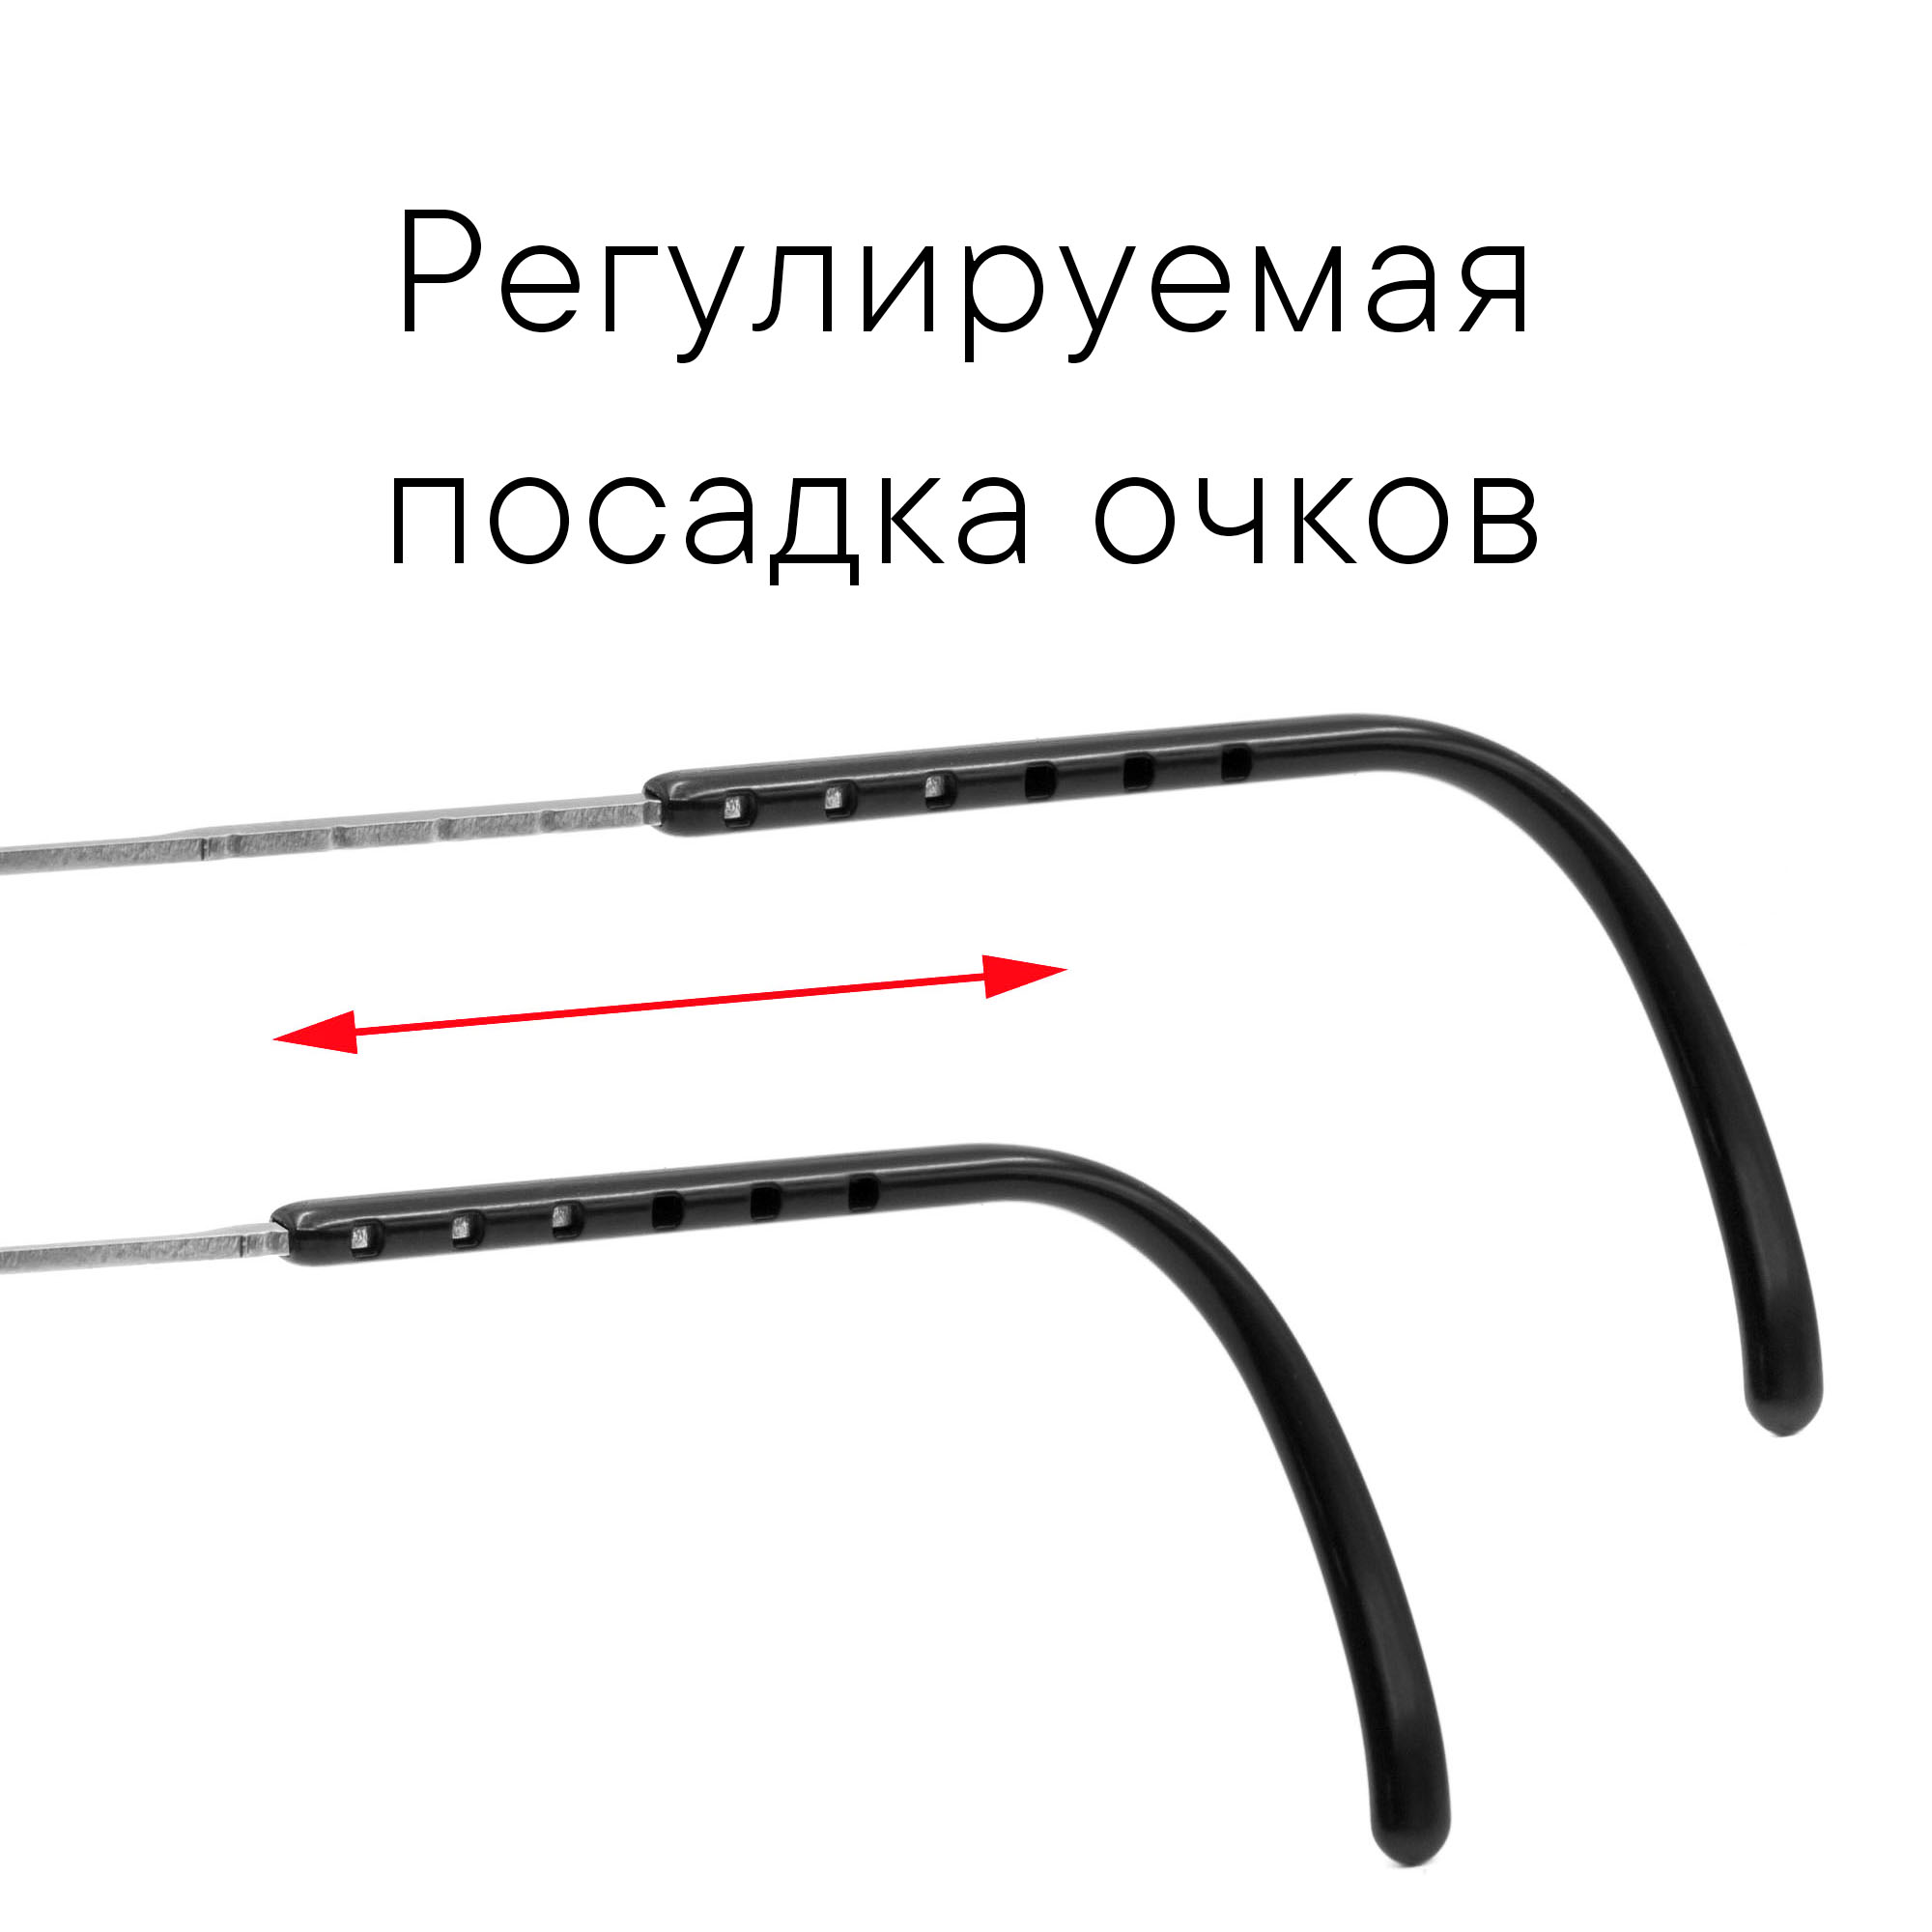 Черные солнцезащитные очки из титана с фиолетовыми линзами. Модель 04